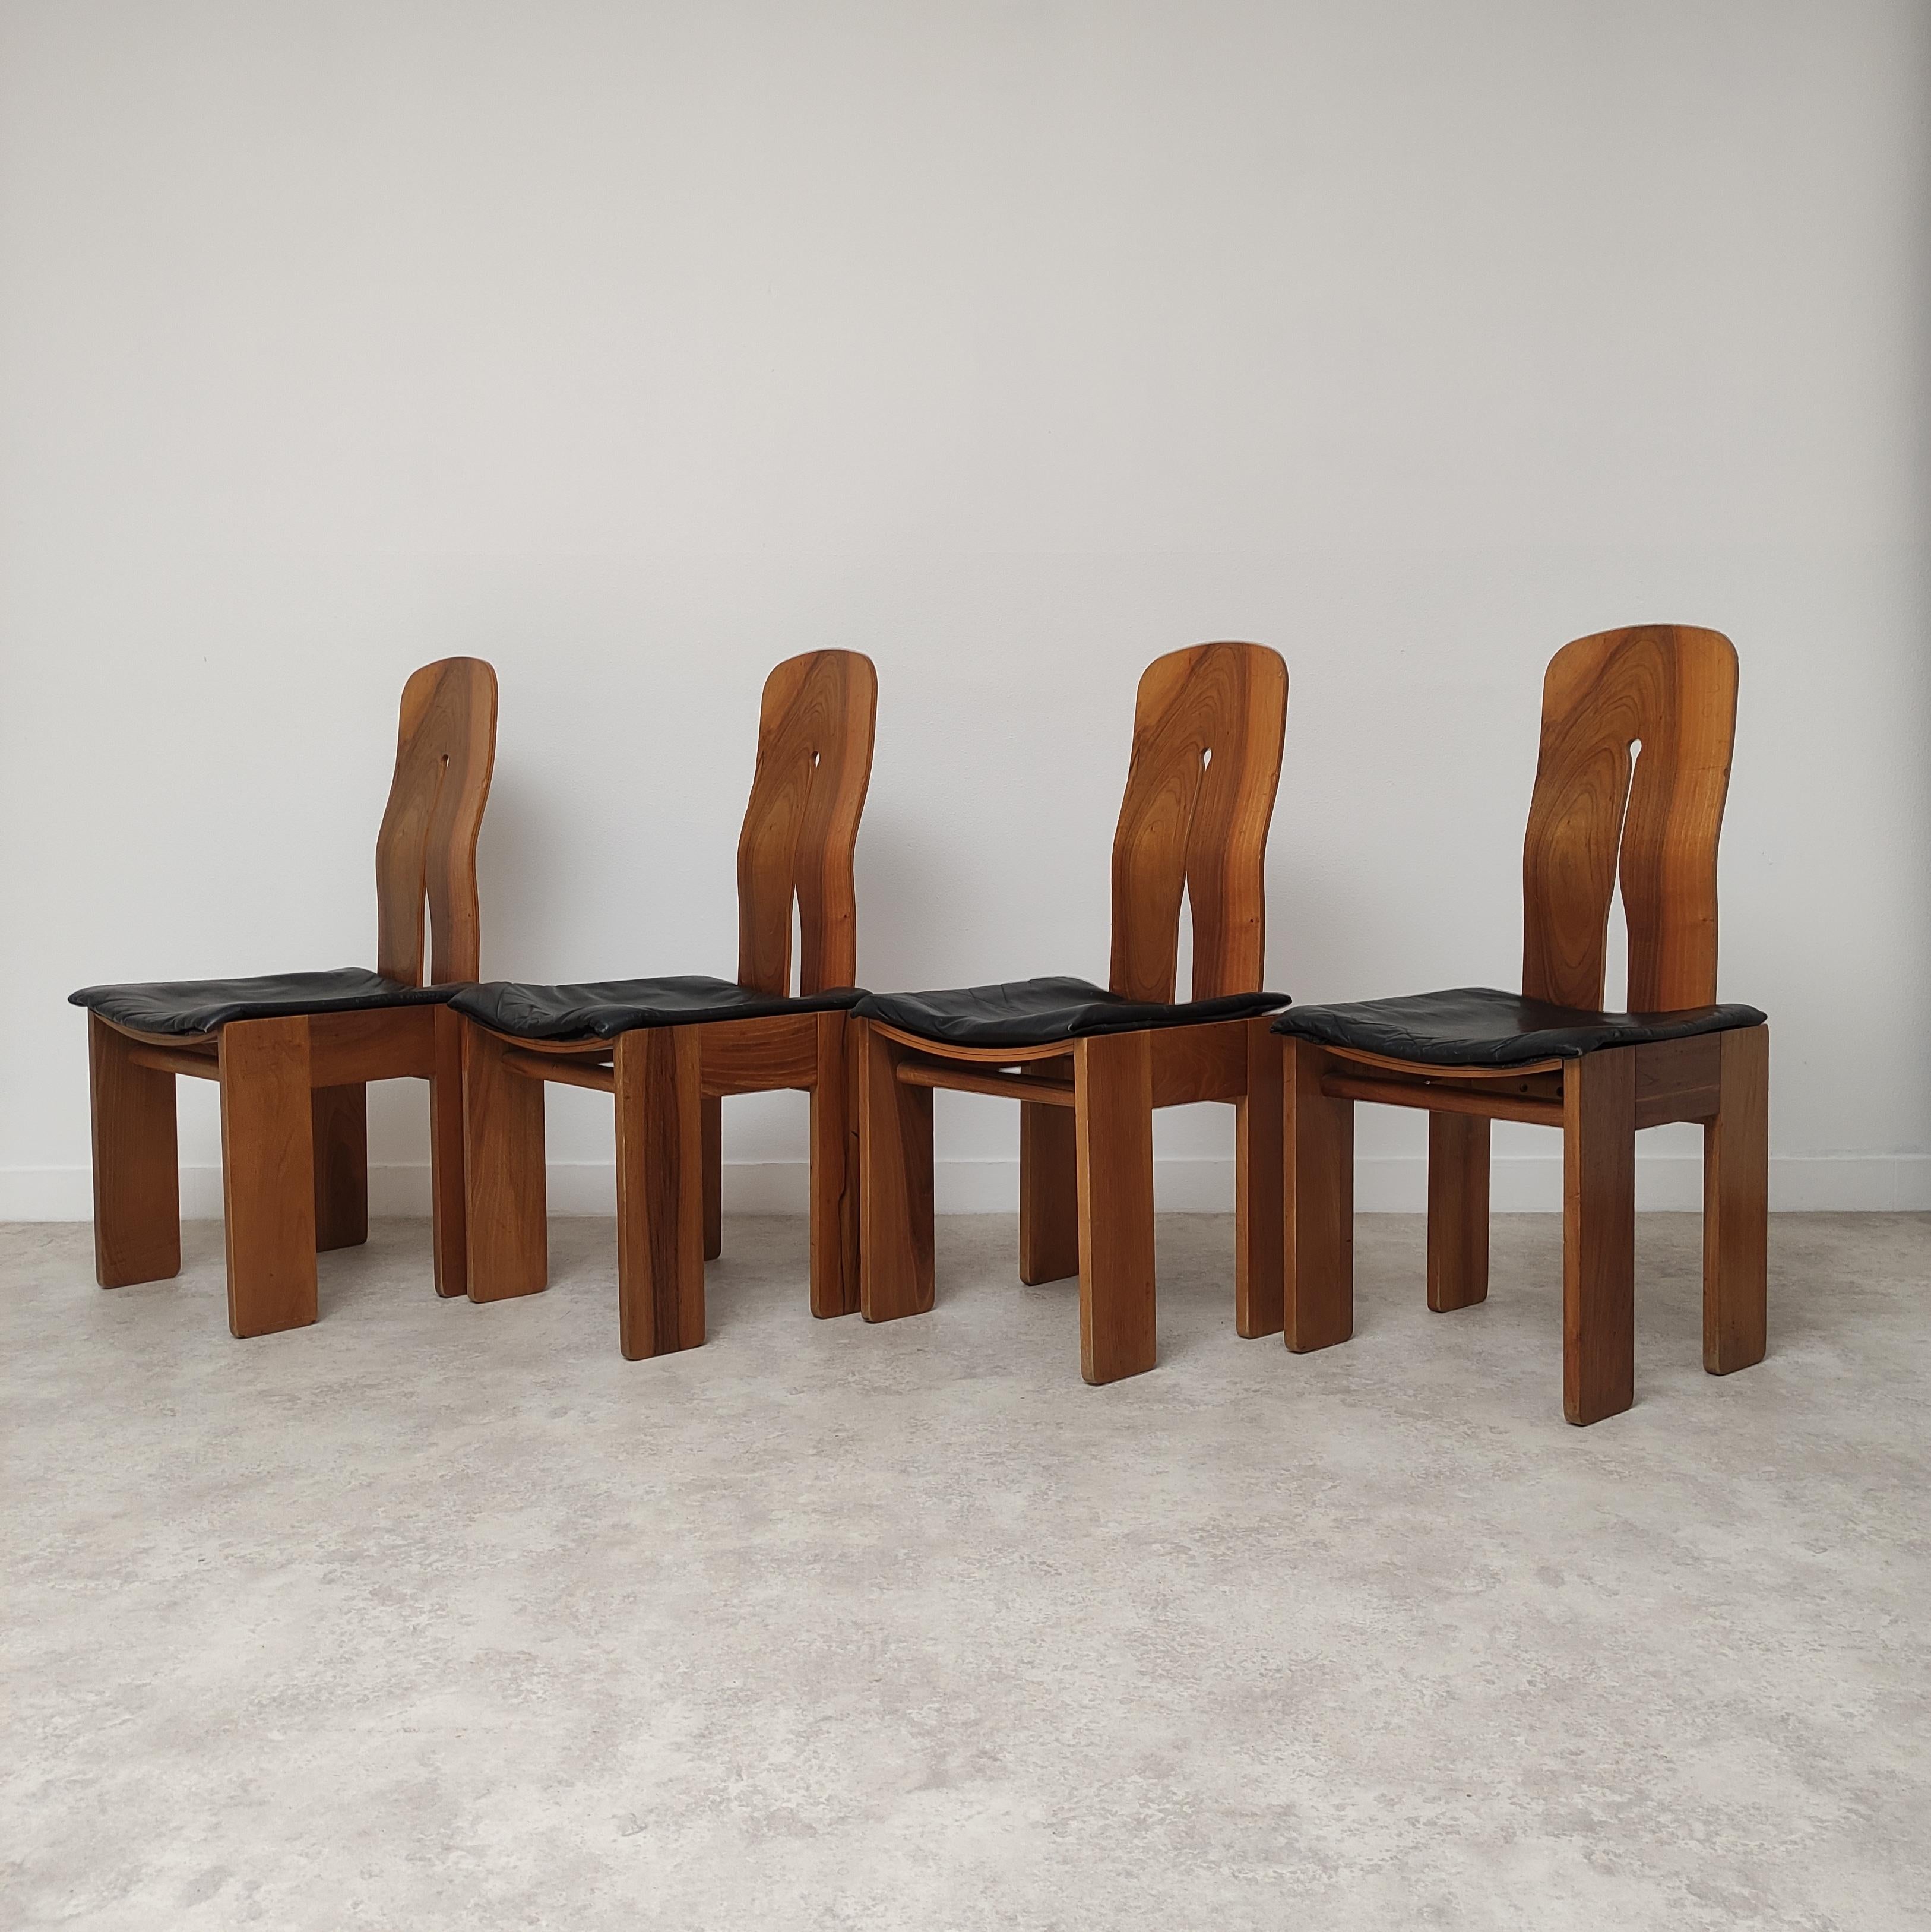 Il s'agit d'un rare ensemble iconique de 4 chaises conçu par Carlo Scarpa pour Bernini, mod 1934-765.
Cette chaise est née en 1970, et se présente dans son état d'origine, sans aucune restauration comme sur la photo, avec son superbe bois de